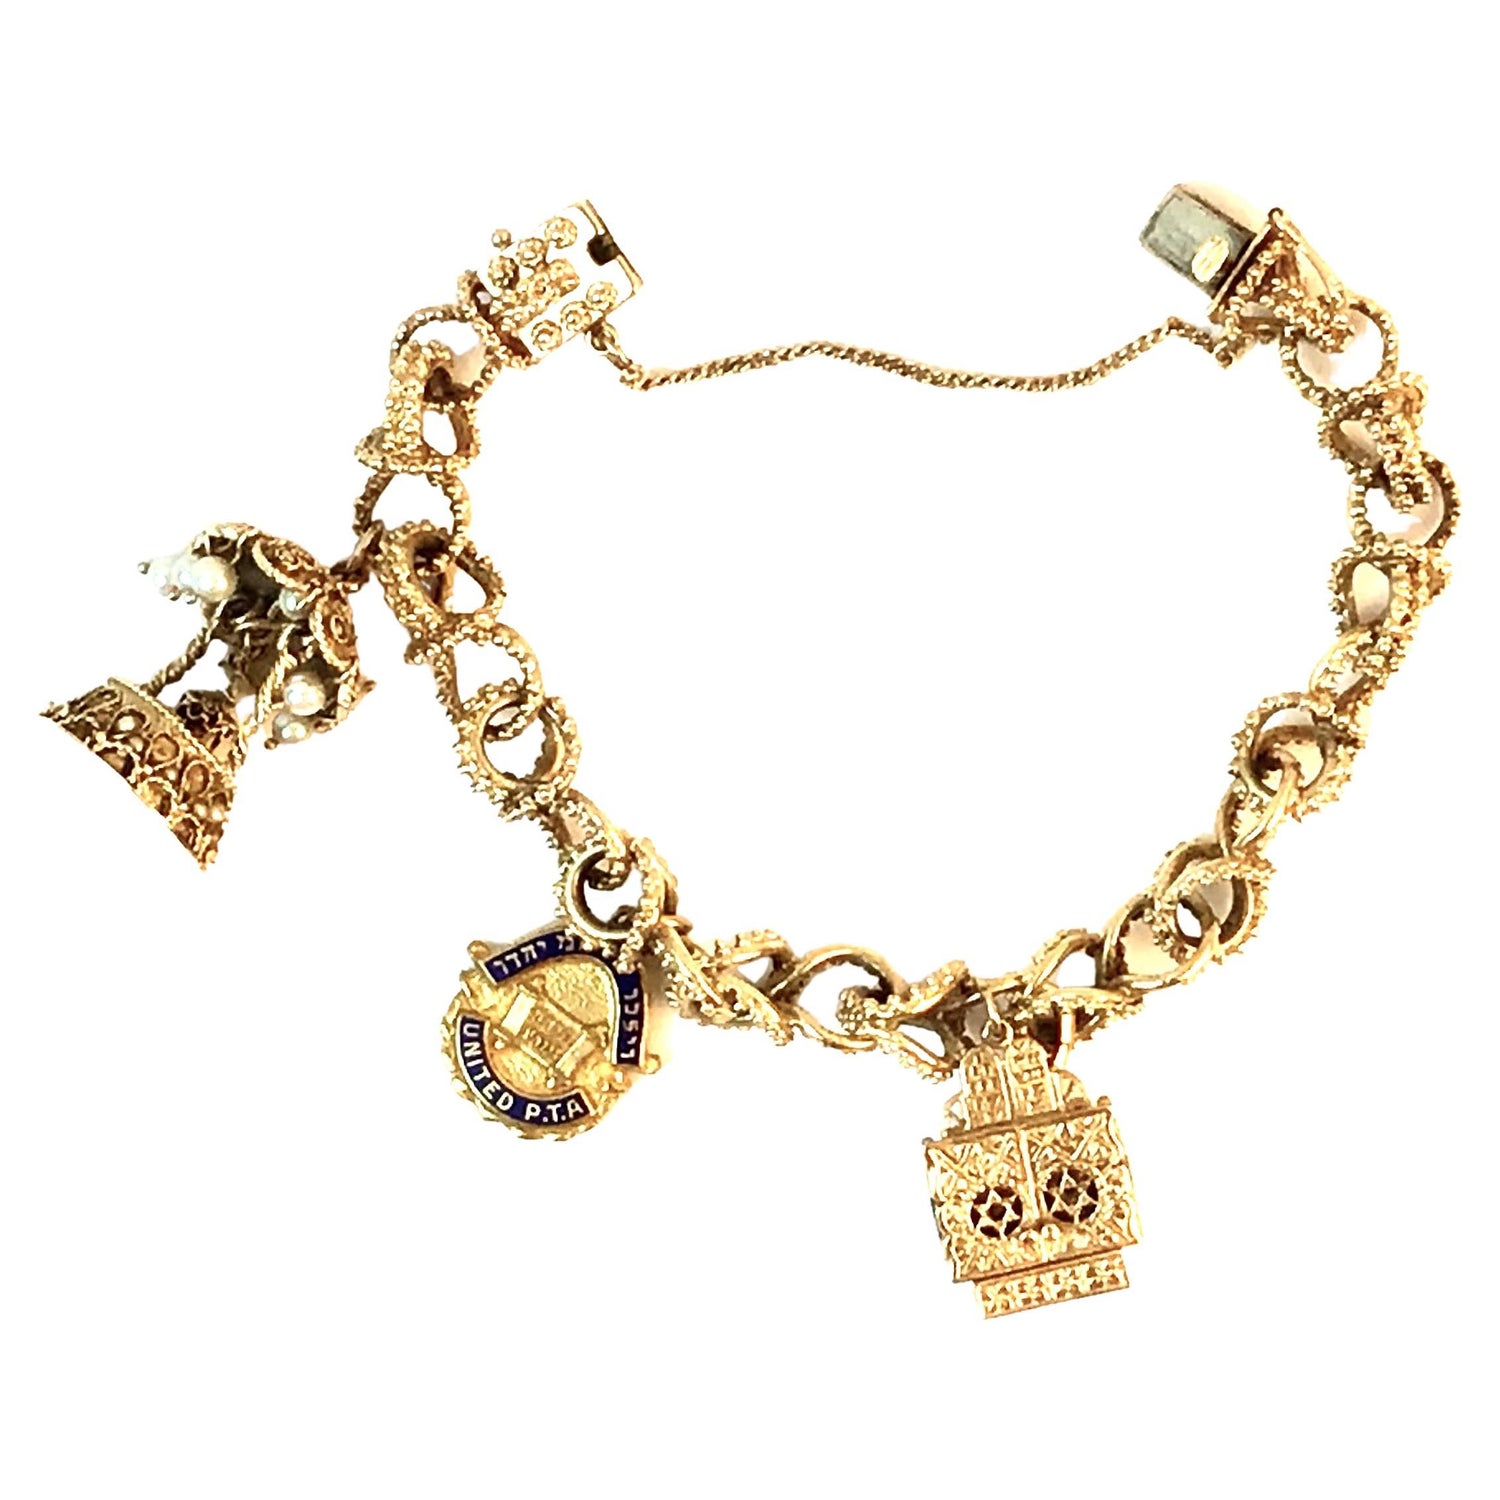 Vintage Gold Charms - 1,503 For Sale on 1stDibs  vintage gold charms for  bracelets, 14k gold charms, vintage gold charms for sale